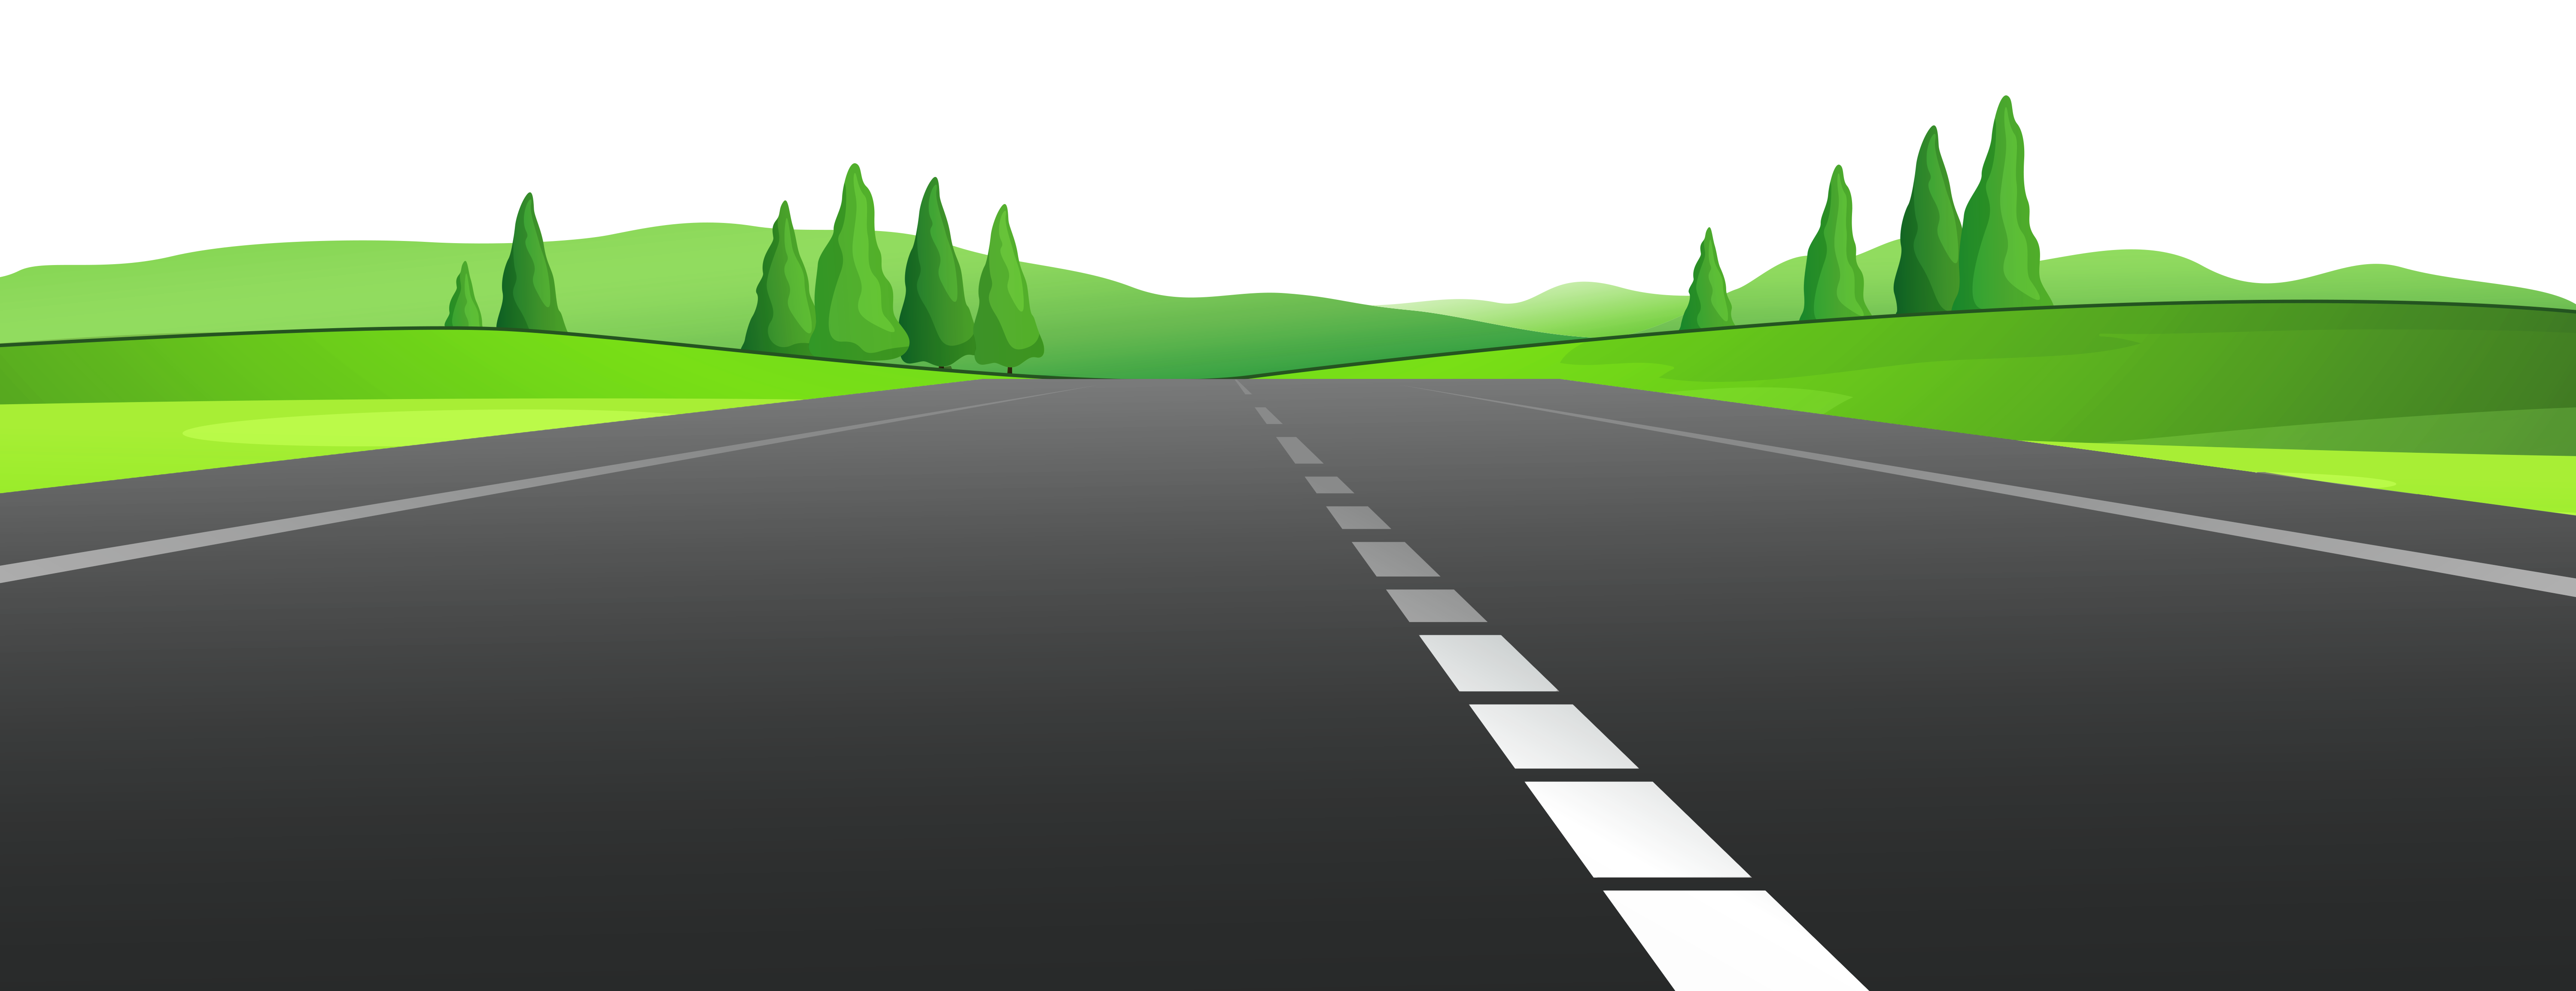 Landscape Roads Clipart